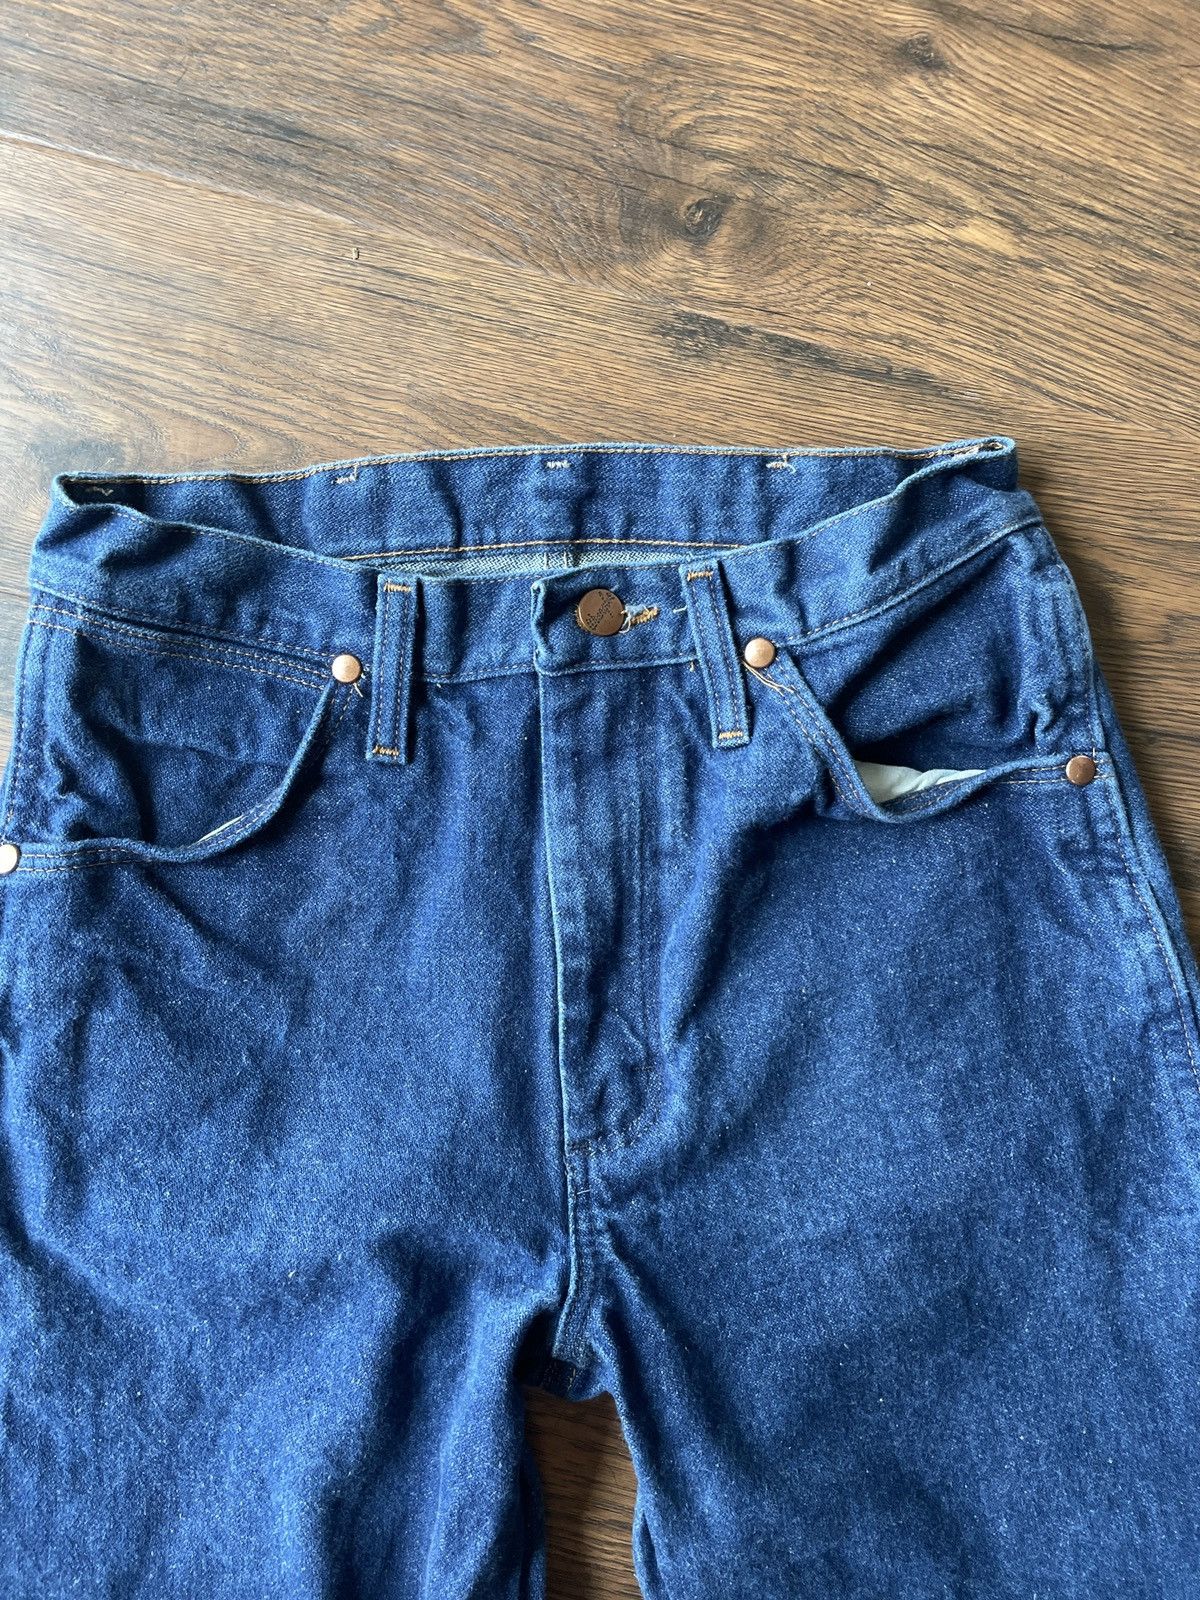 Wrangler wrangler jeans Size US 29 - 2 Preview